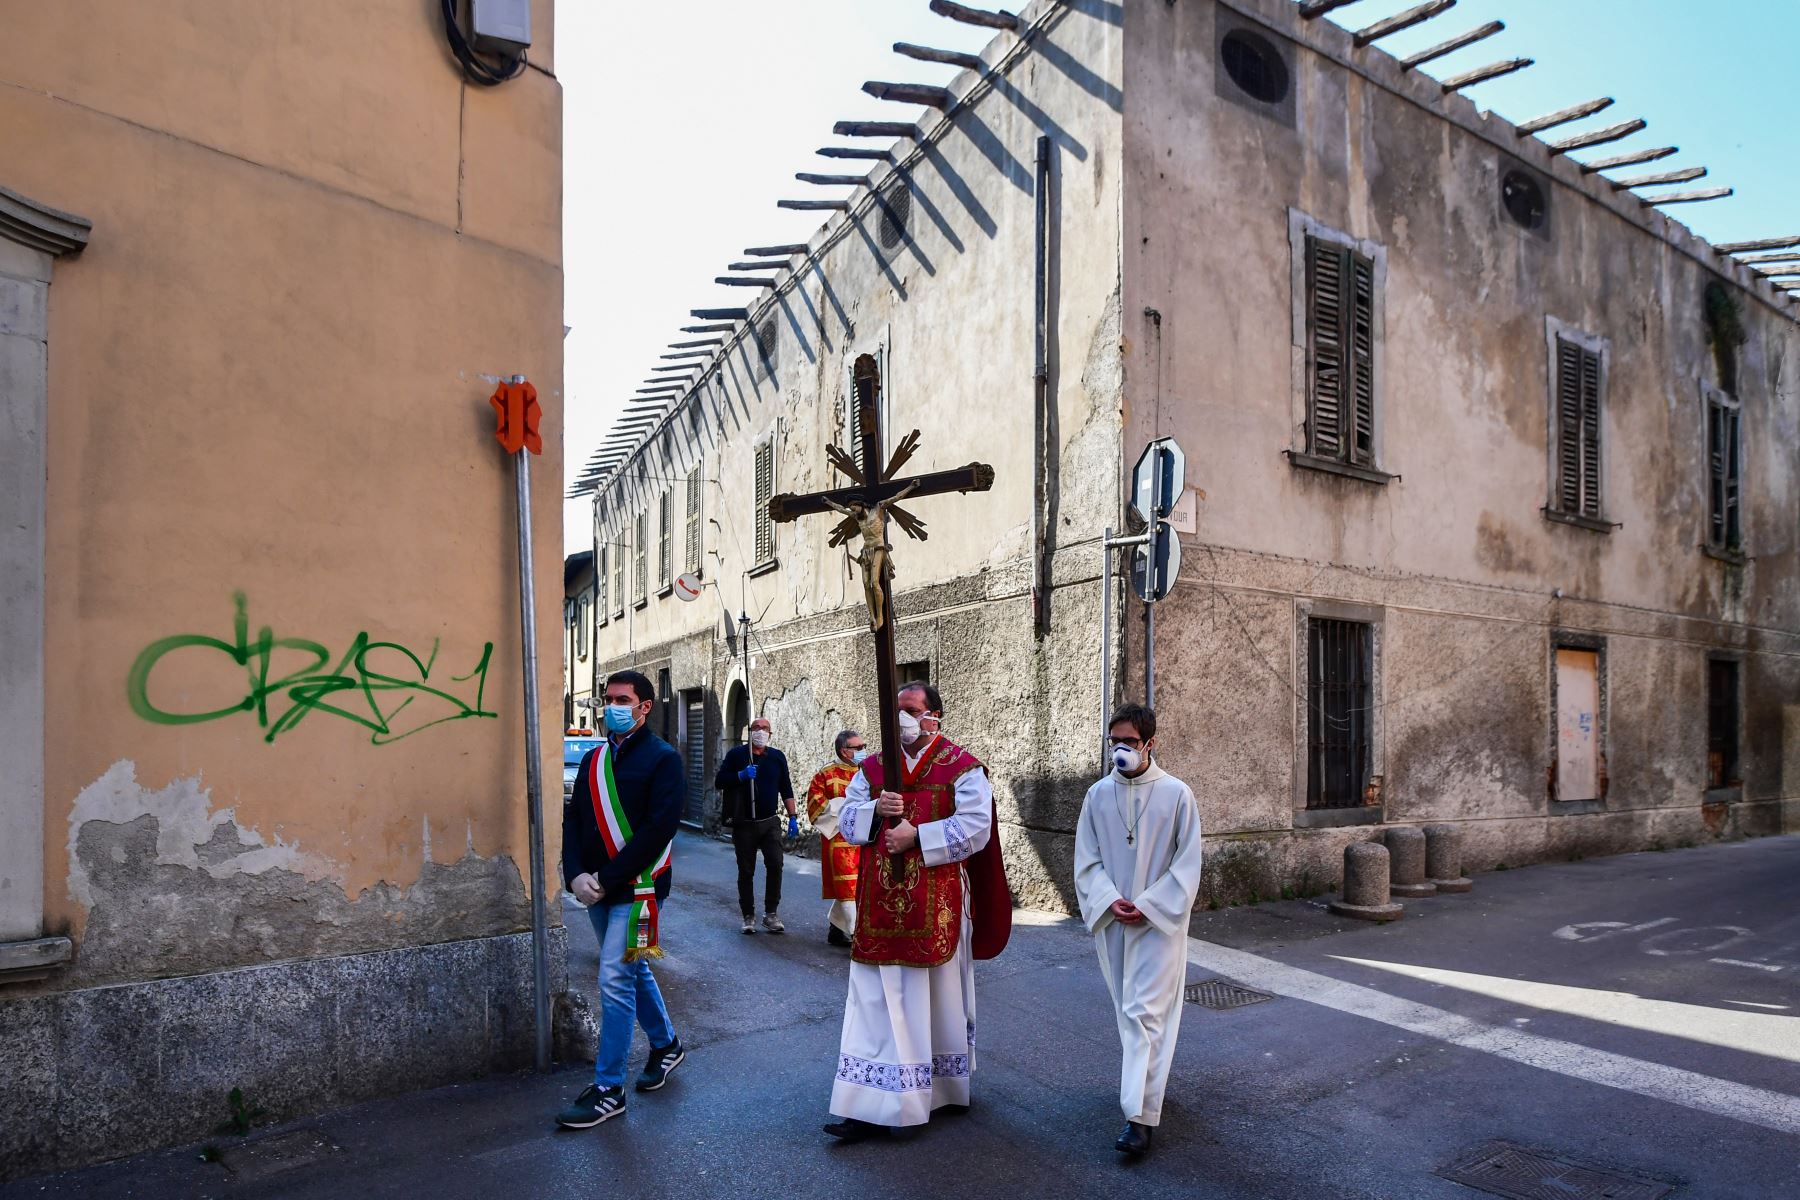 El párroco de la iglesia de Santa Maria Assunta en Pontoglia realiza Vía Crucis con una máscara facial, escoltado por el alcalde de Pontoglio. Foto: AFP